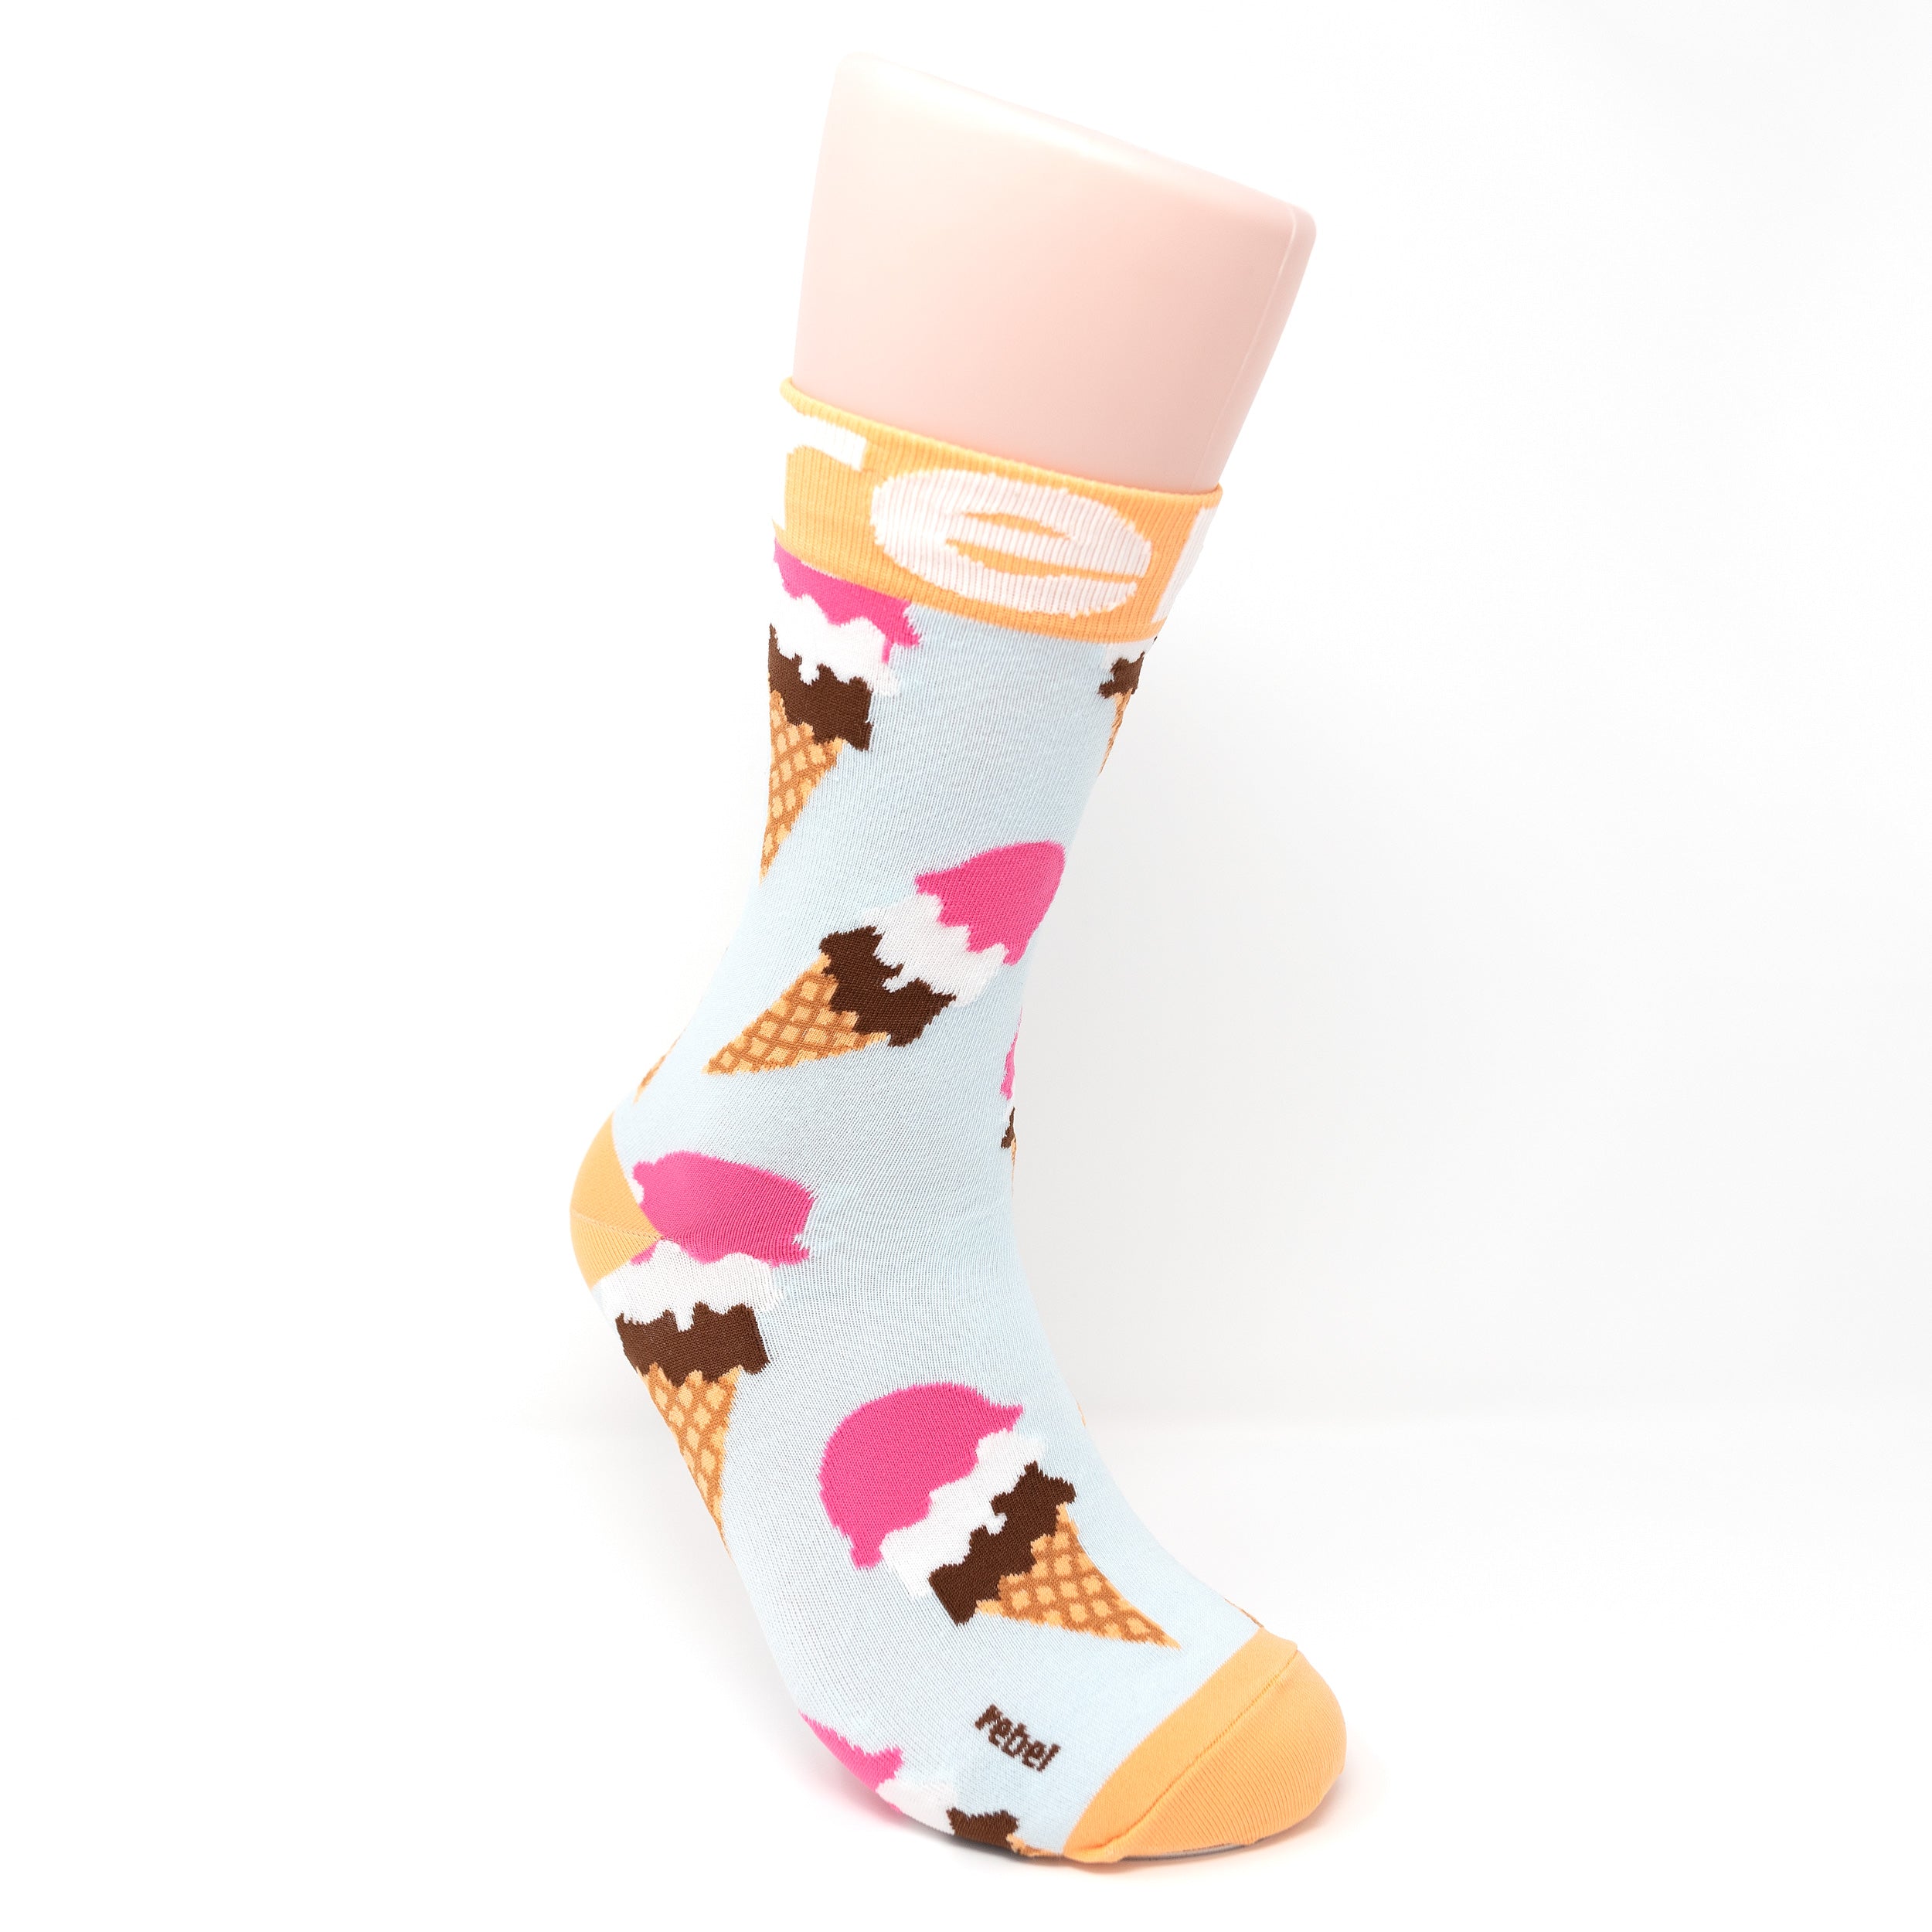 Socks by Soxygen – Famous Rebel